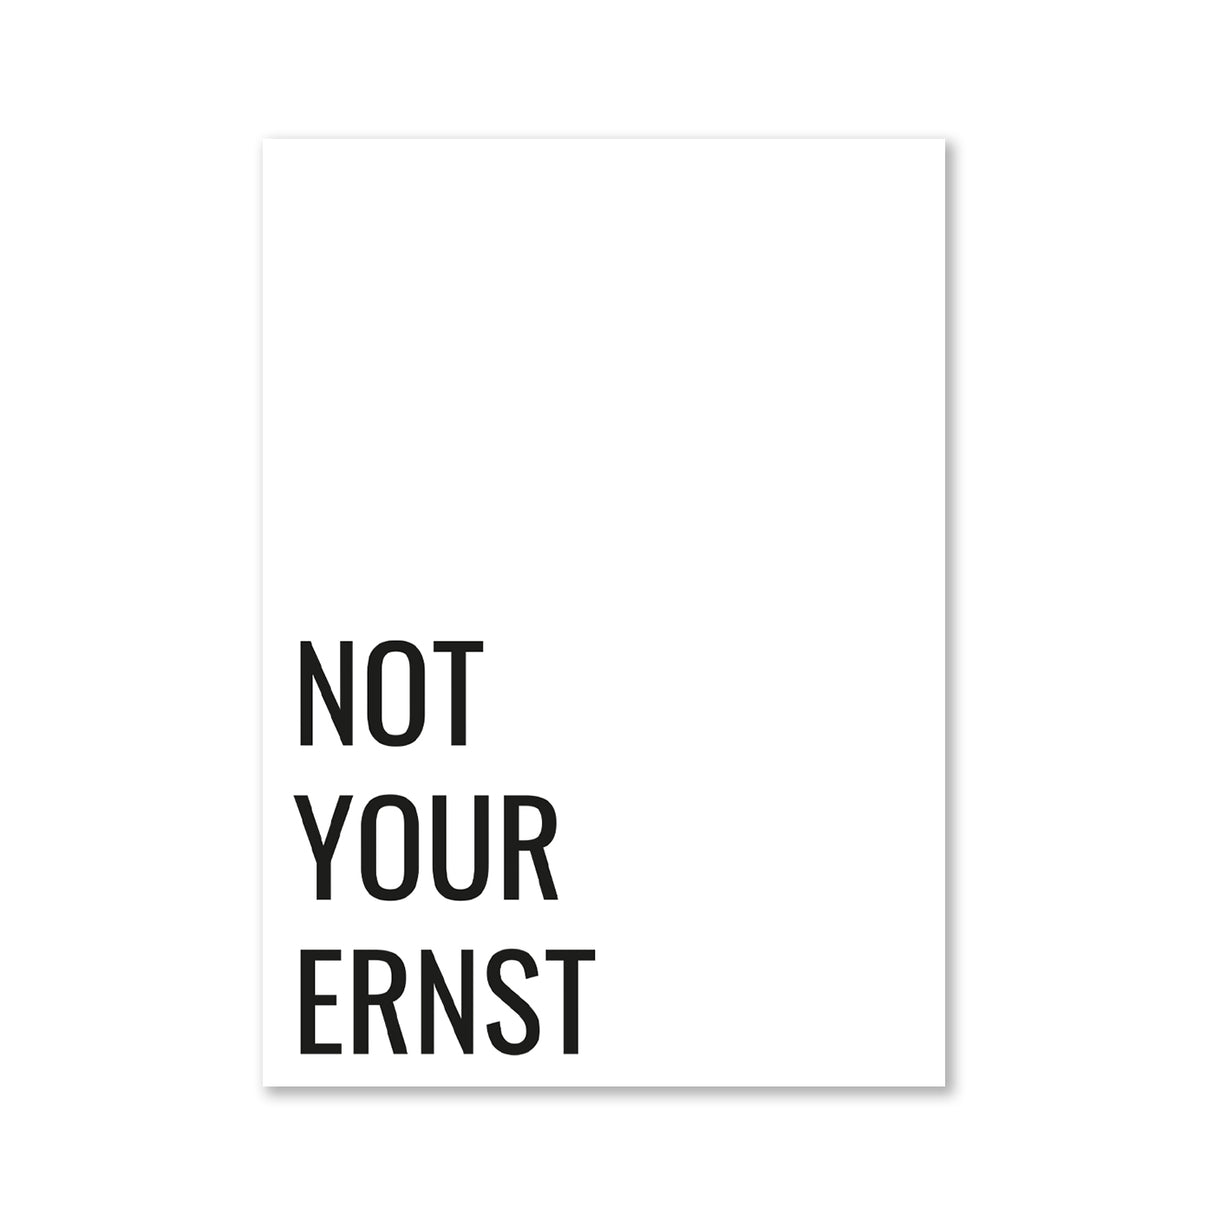 Not your ernst - Magnet